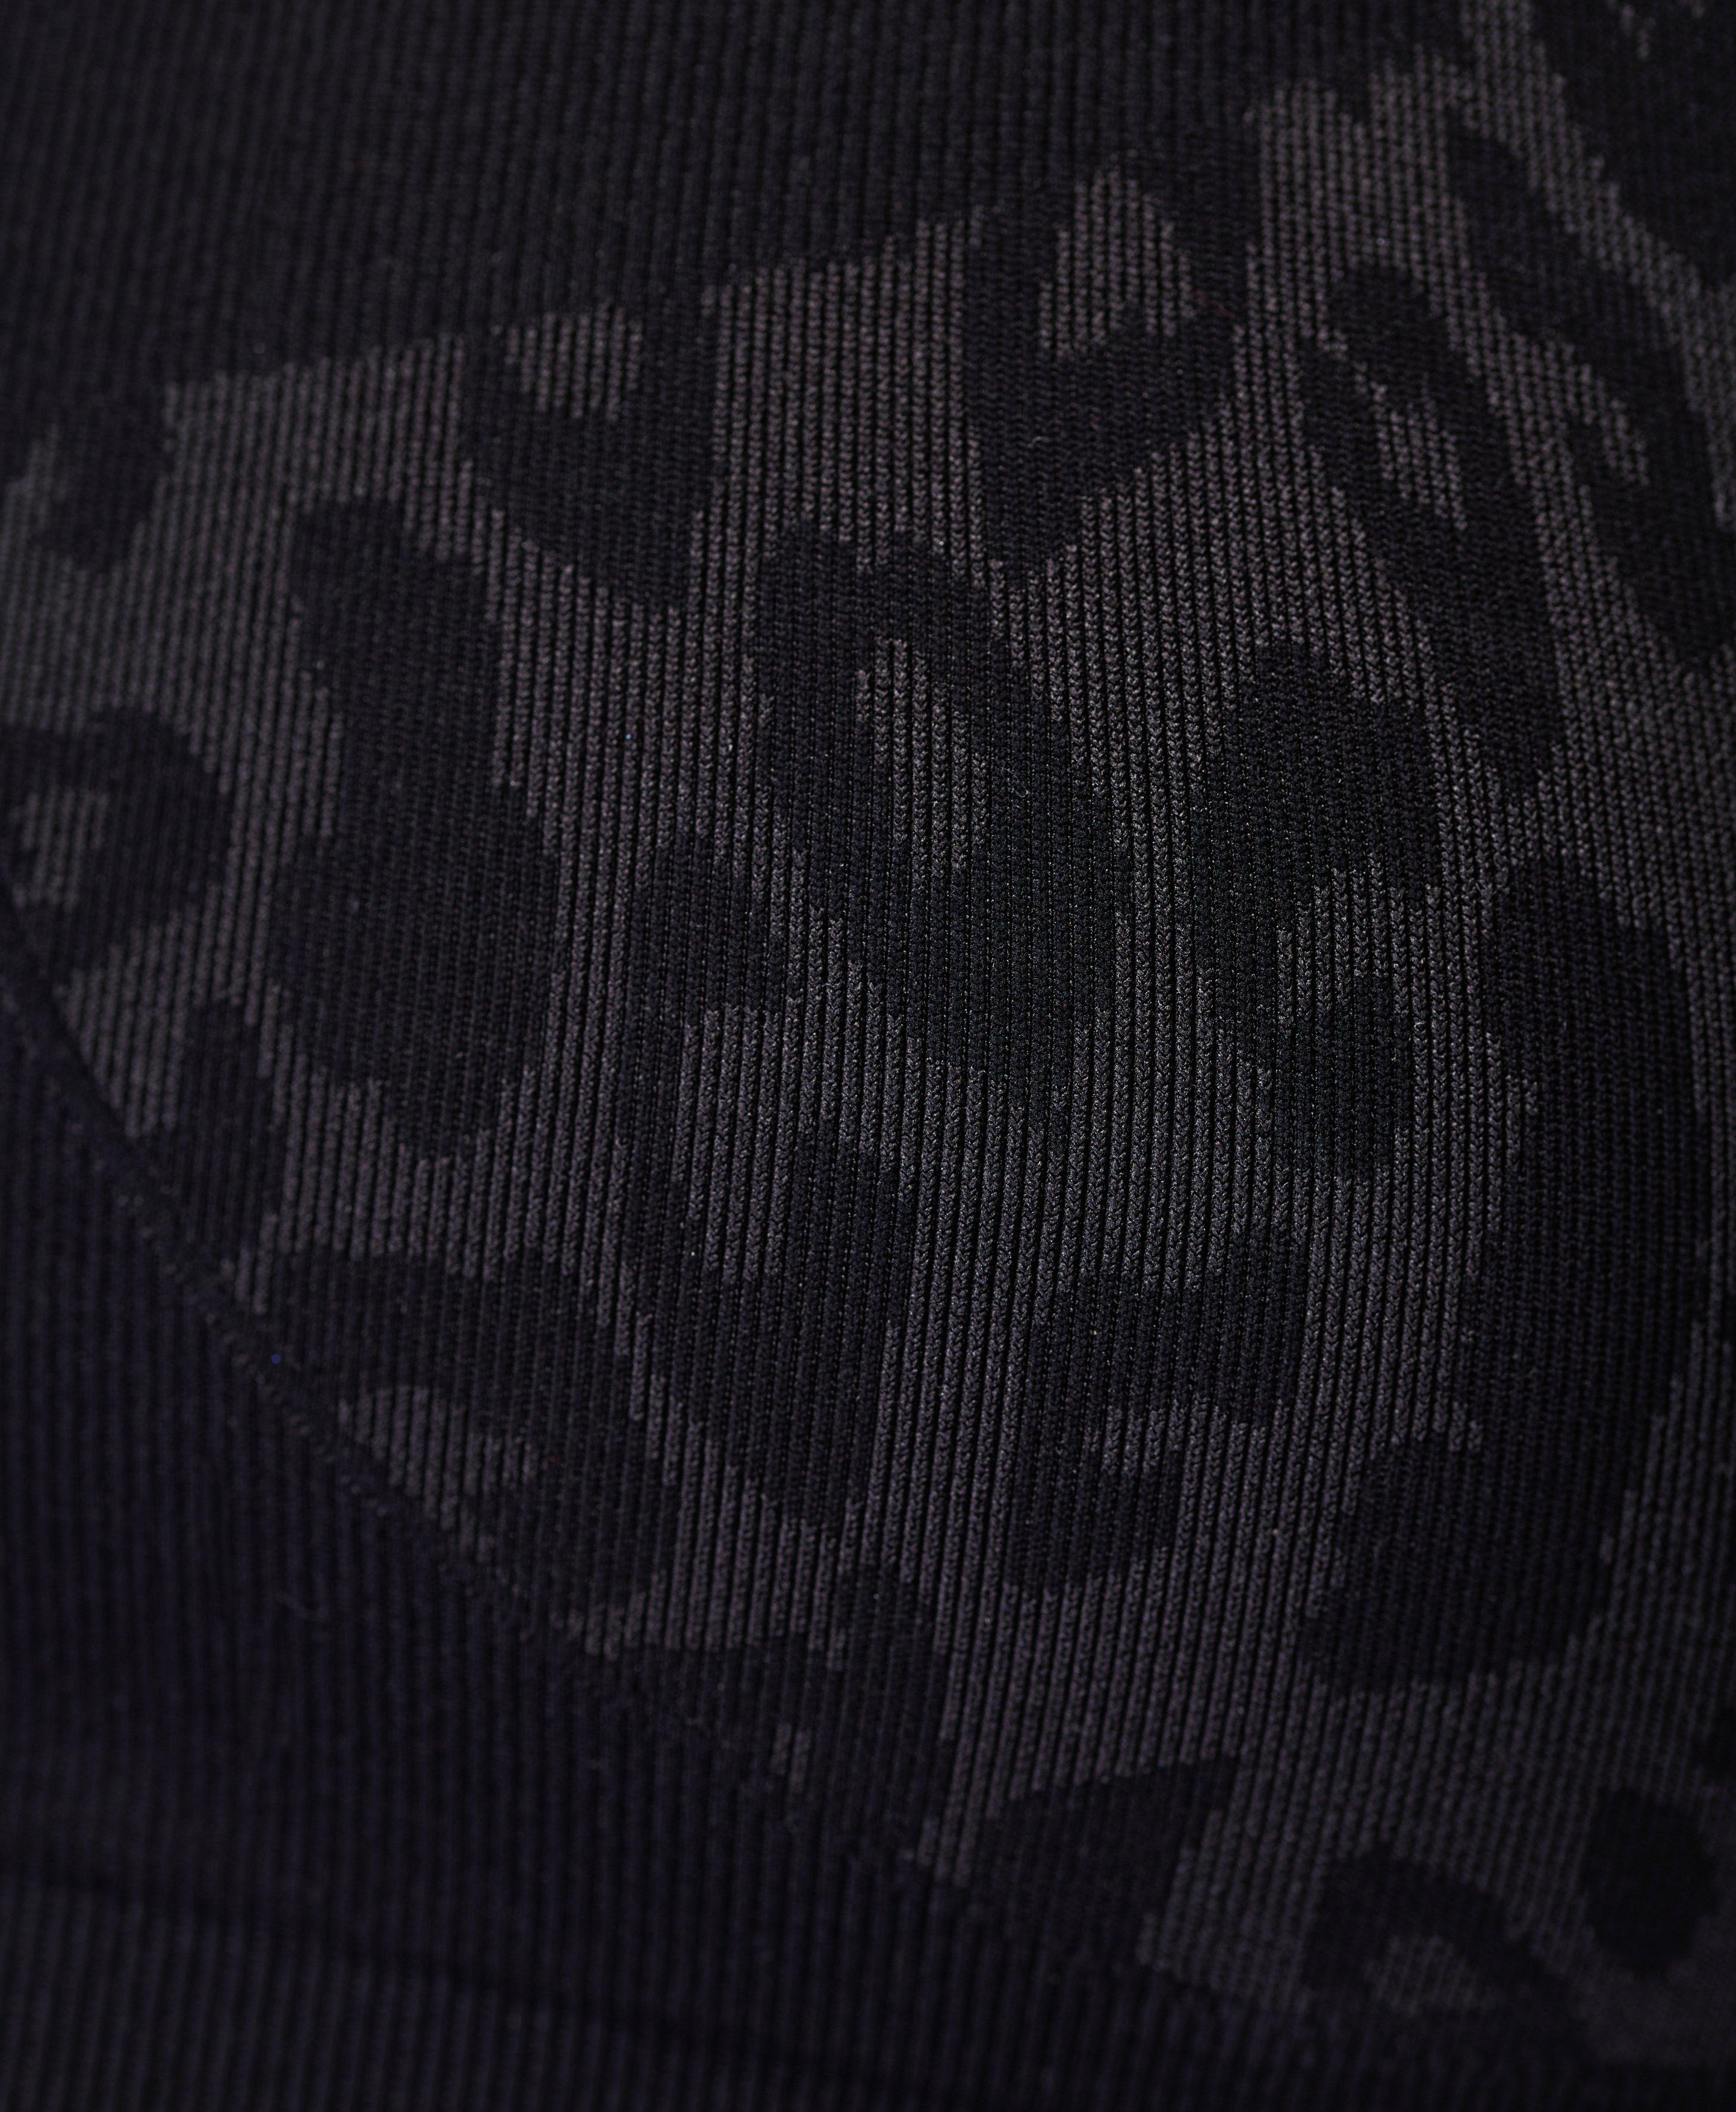 Sweaty Betty Stamina Sports Bra Grey Leopard Black Camouflage Size XS NWT